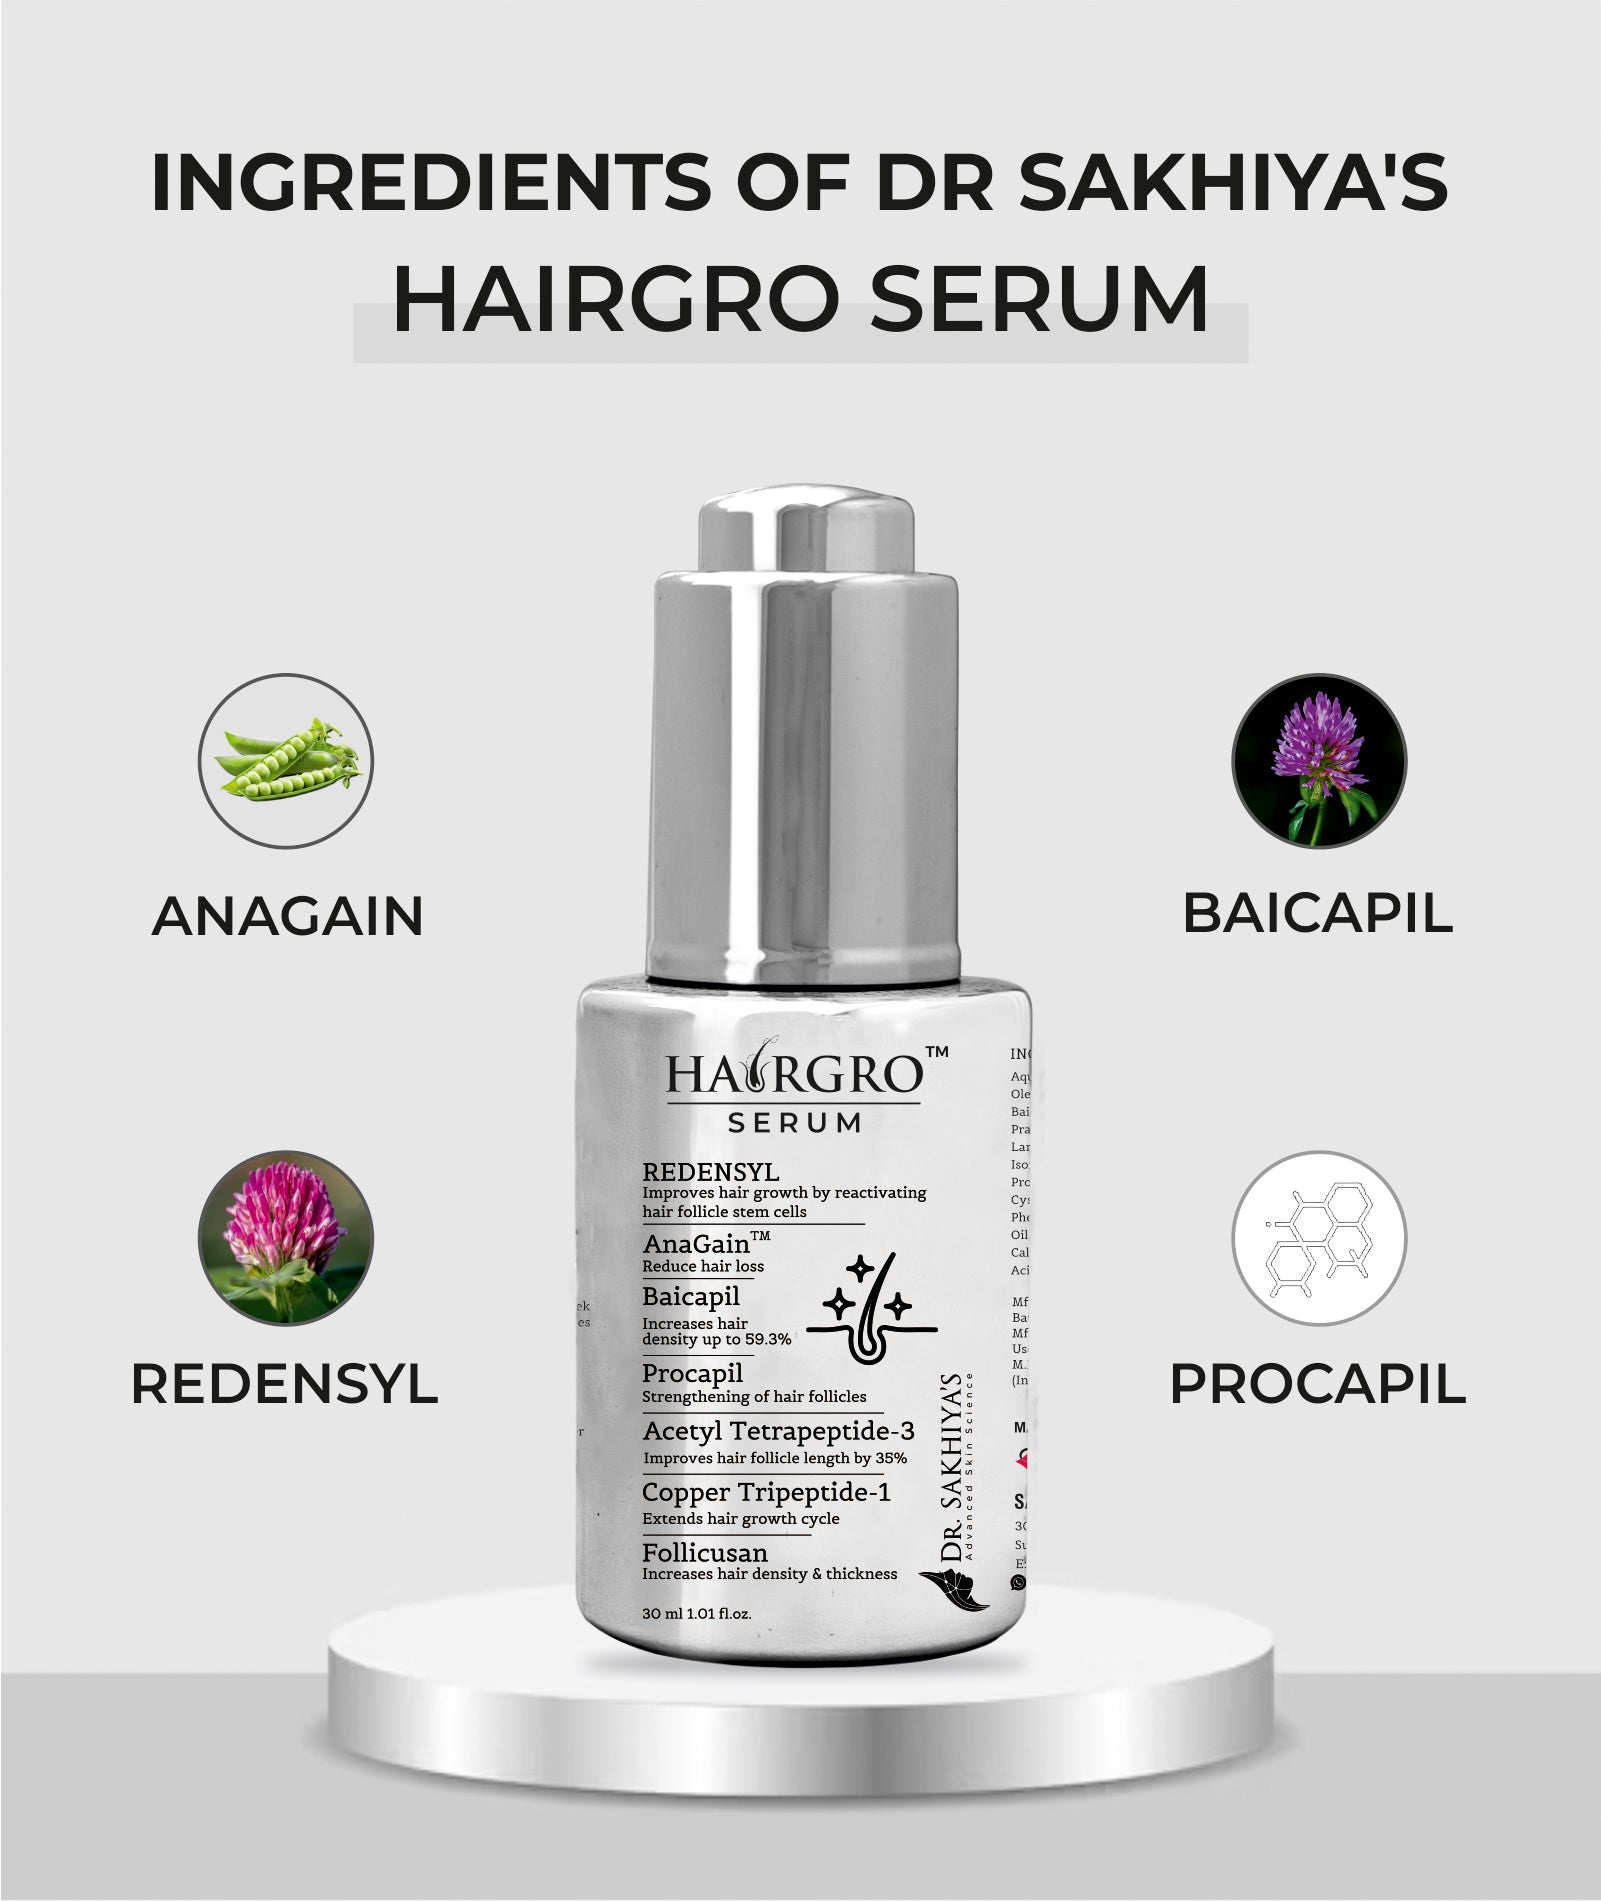 Ingredients Present In Dr Sakhiyas Hair Growth Serum